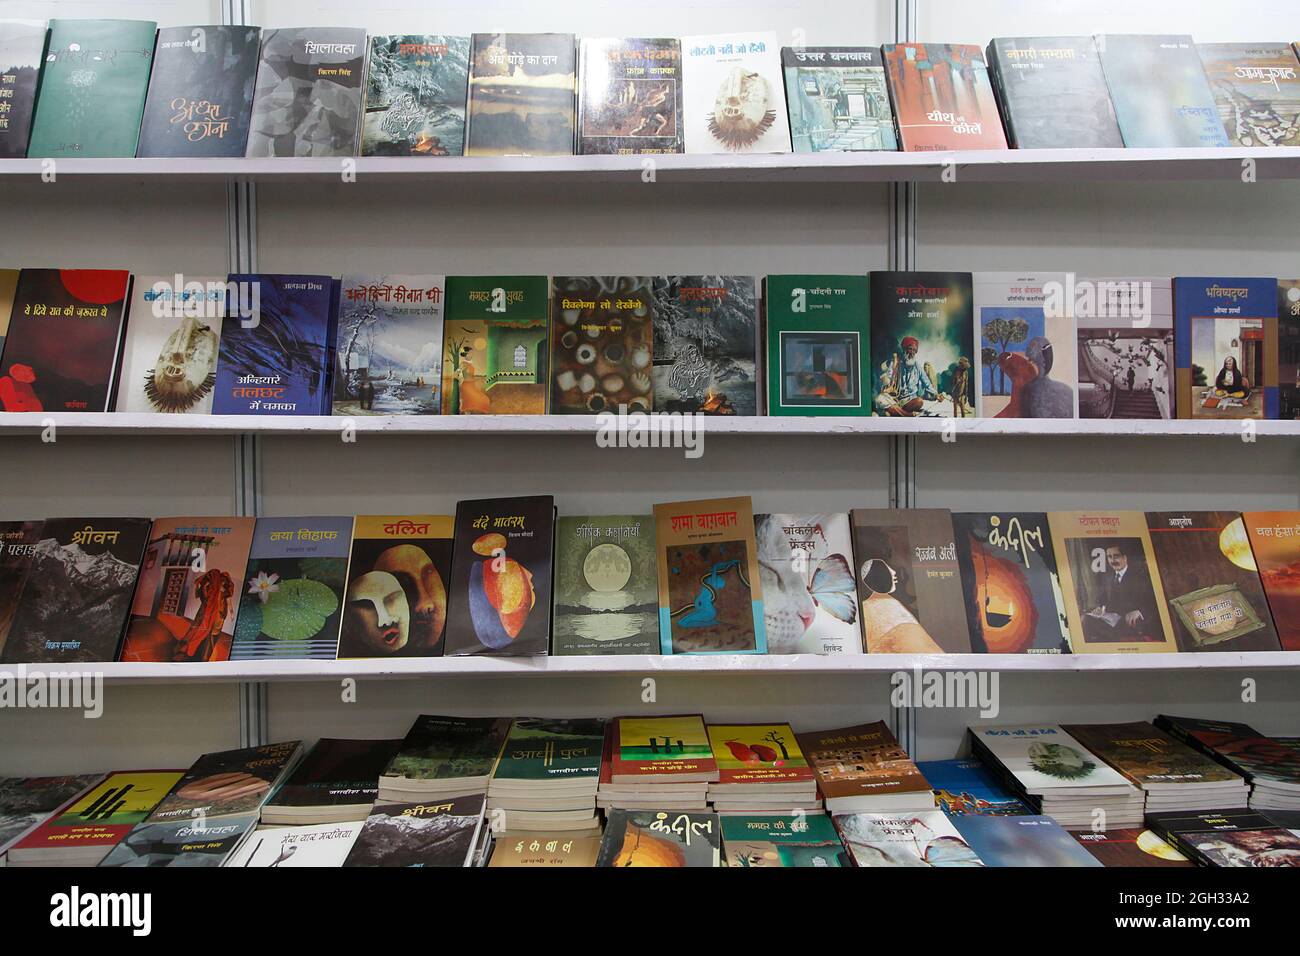 Les visiteurs inspectent et achètent les livres exposés à une foire du livre à New Delhi, en Inde. Banque D'Images